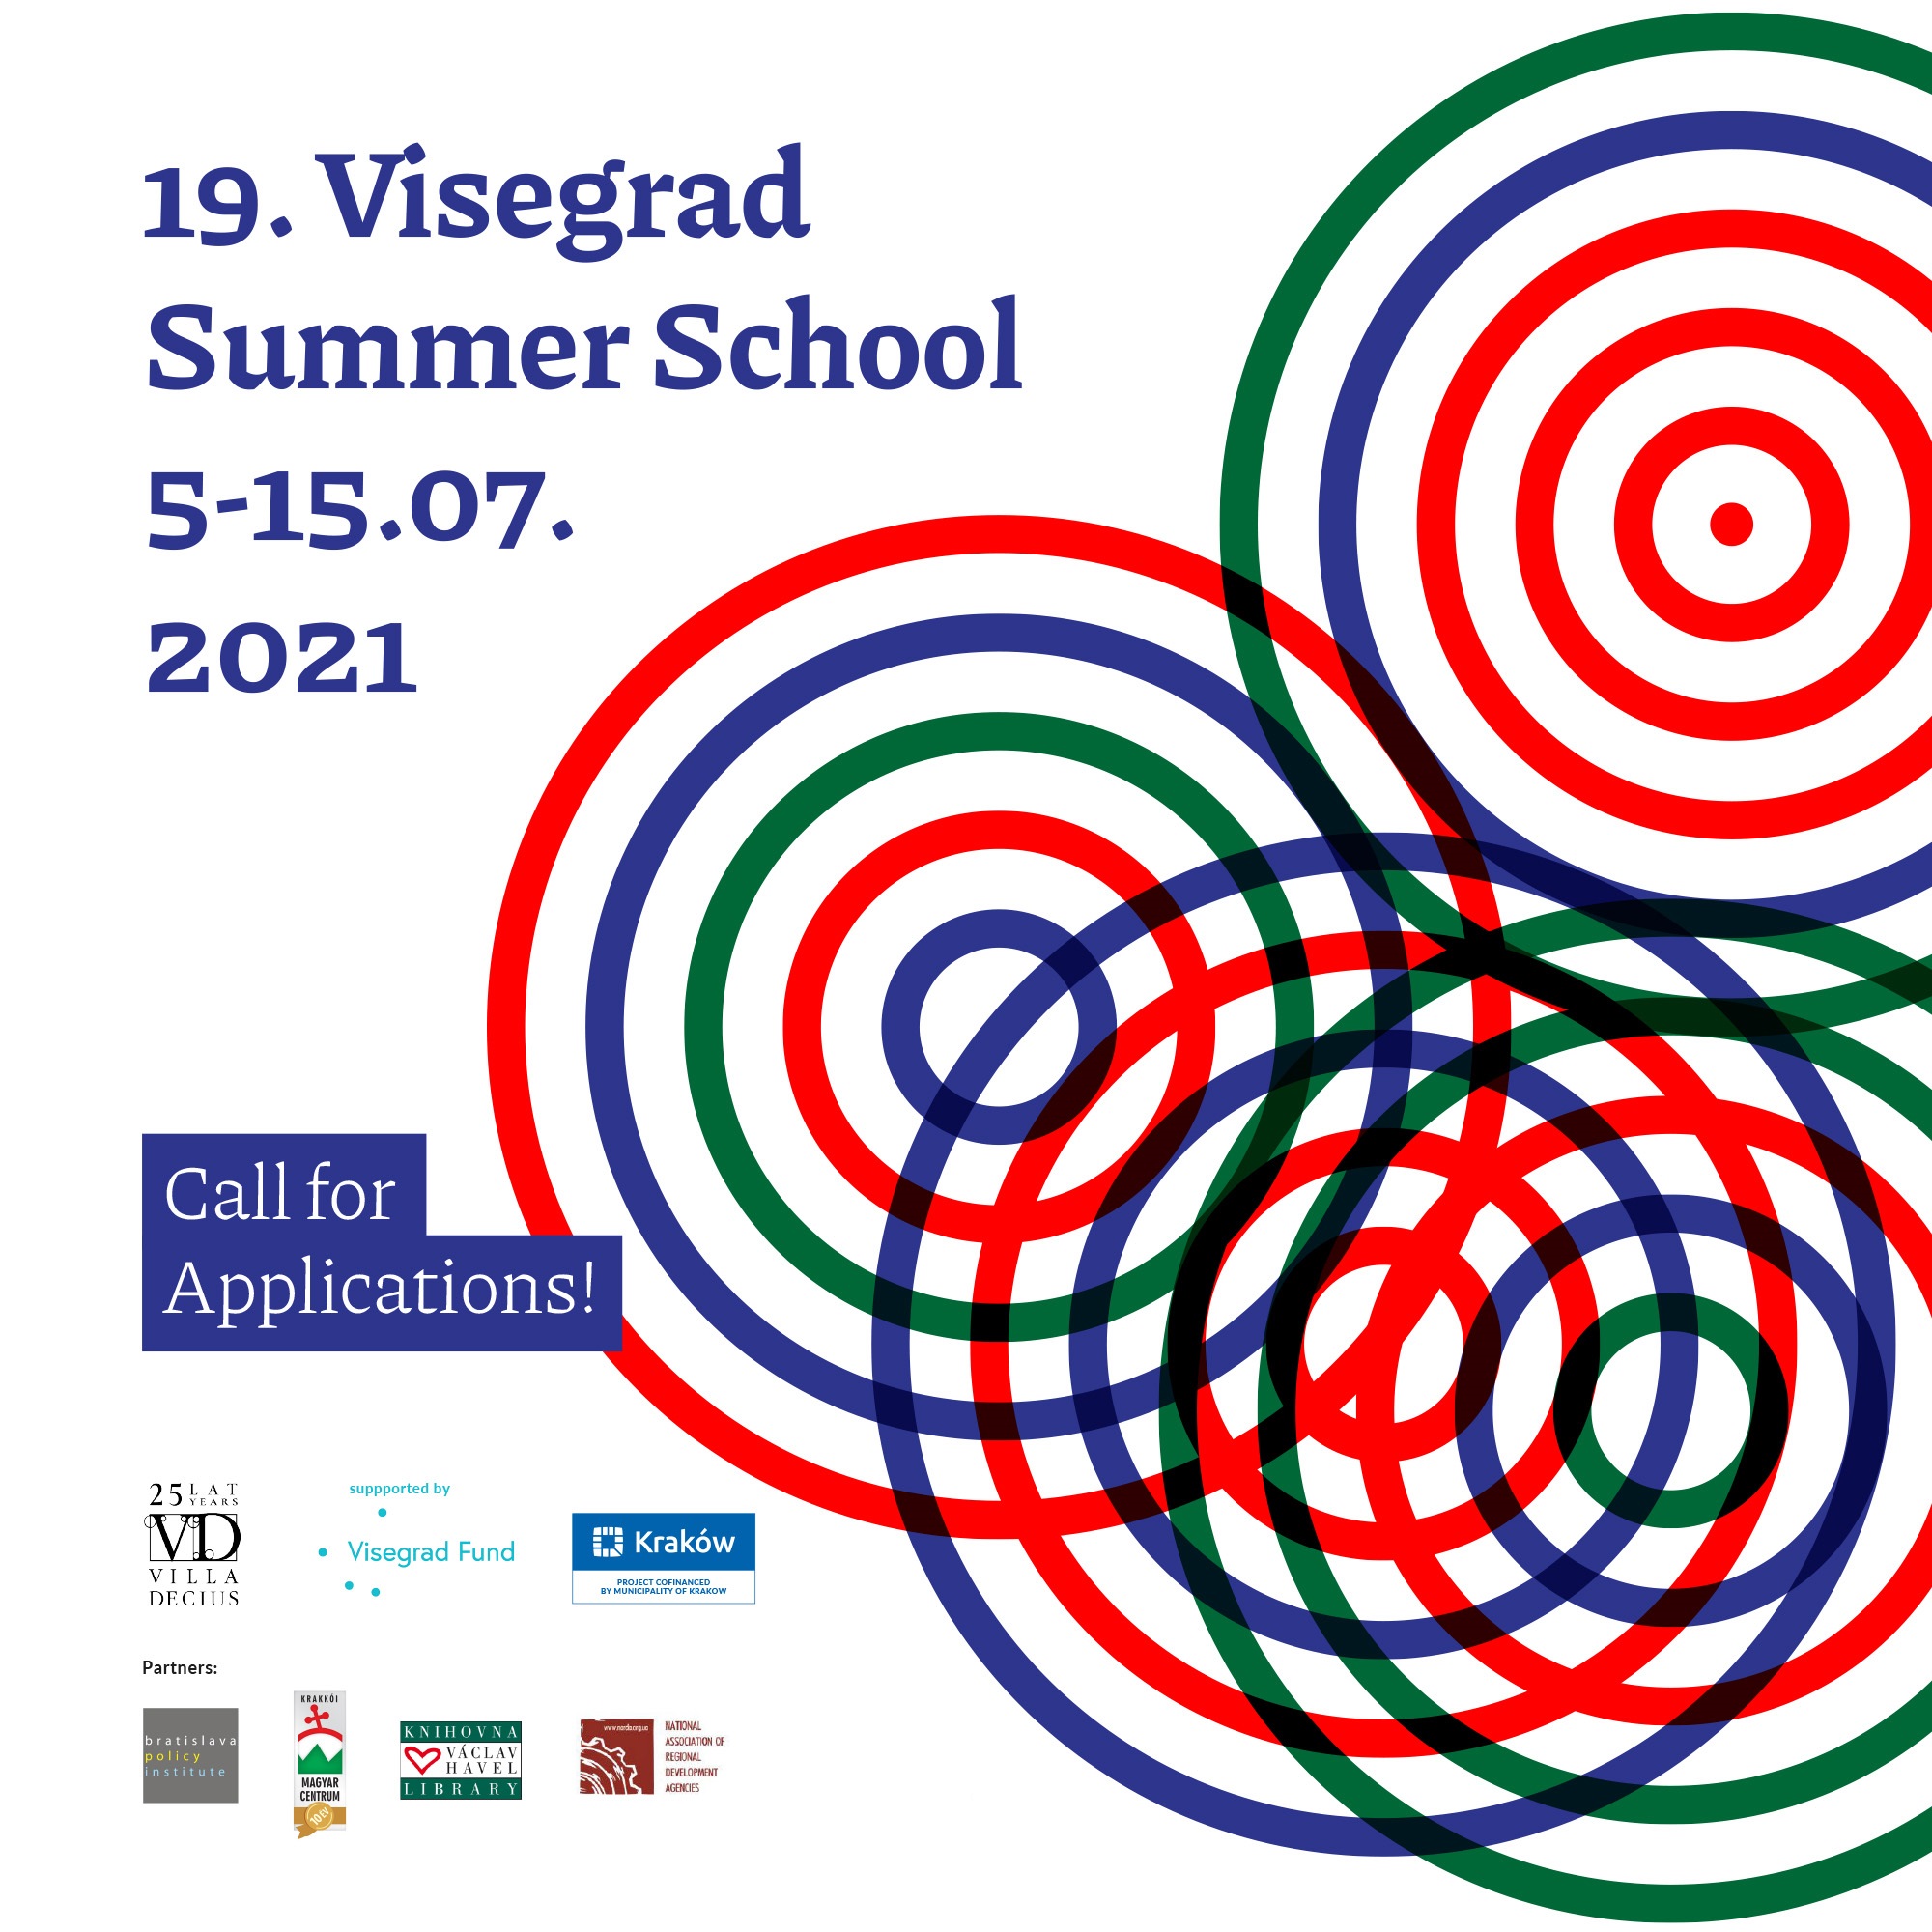 Visegrad Summer School calls for applications